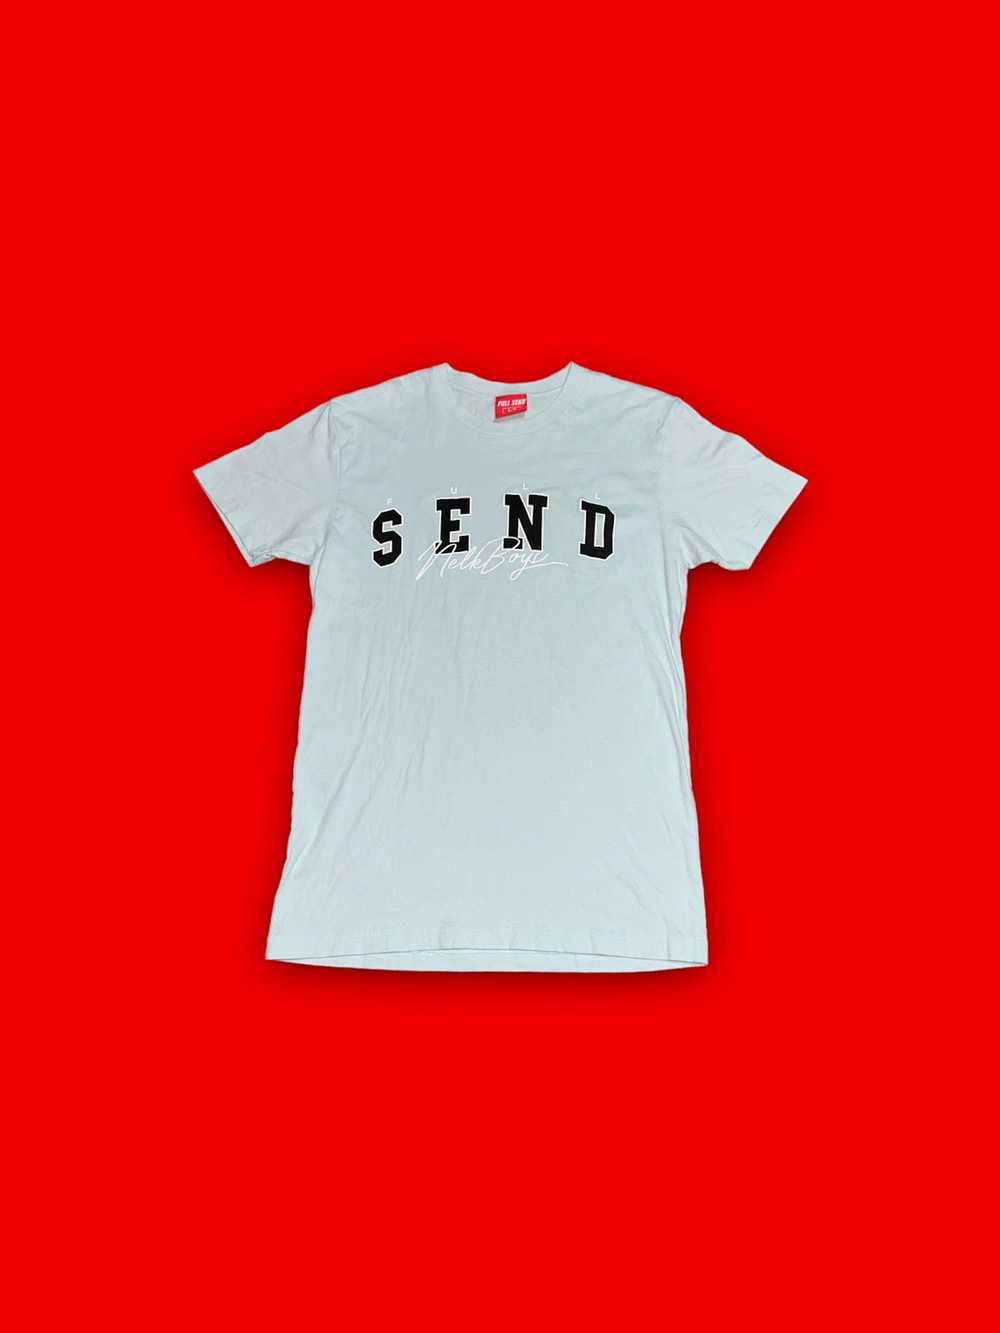 Full Send by Nelk Boys Nelk boys full send t-shirt - image 1